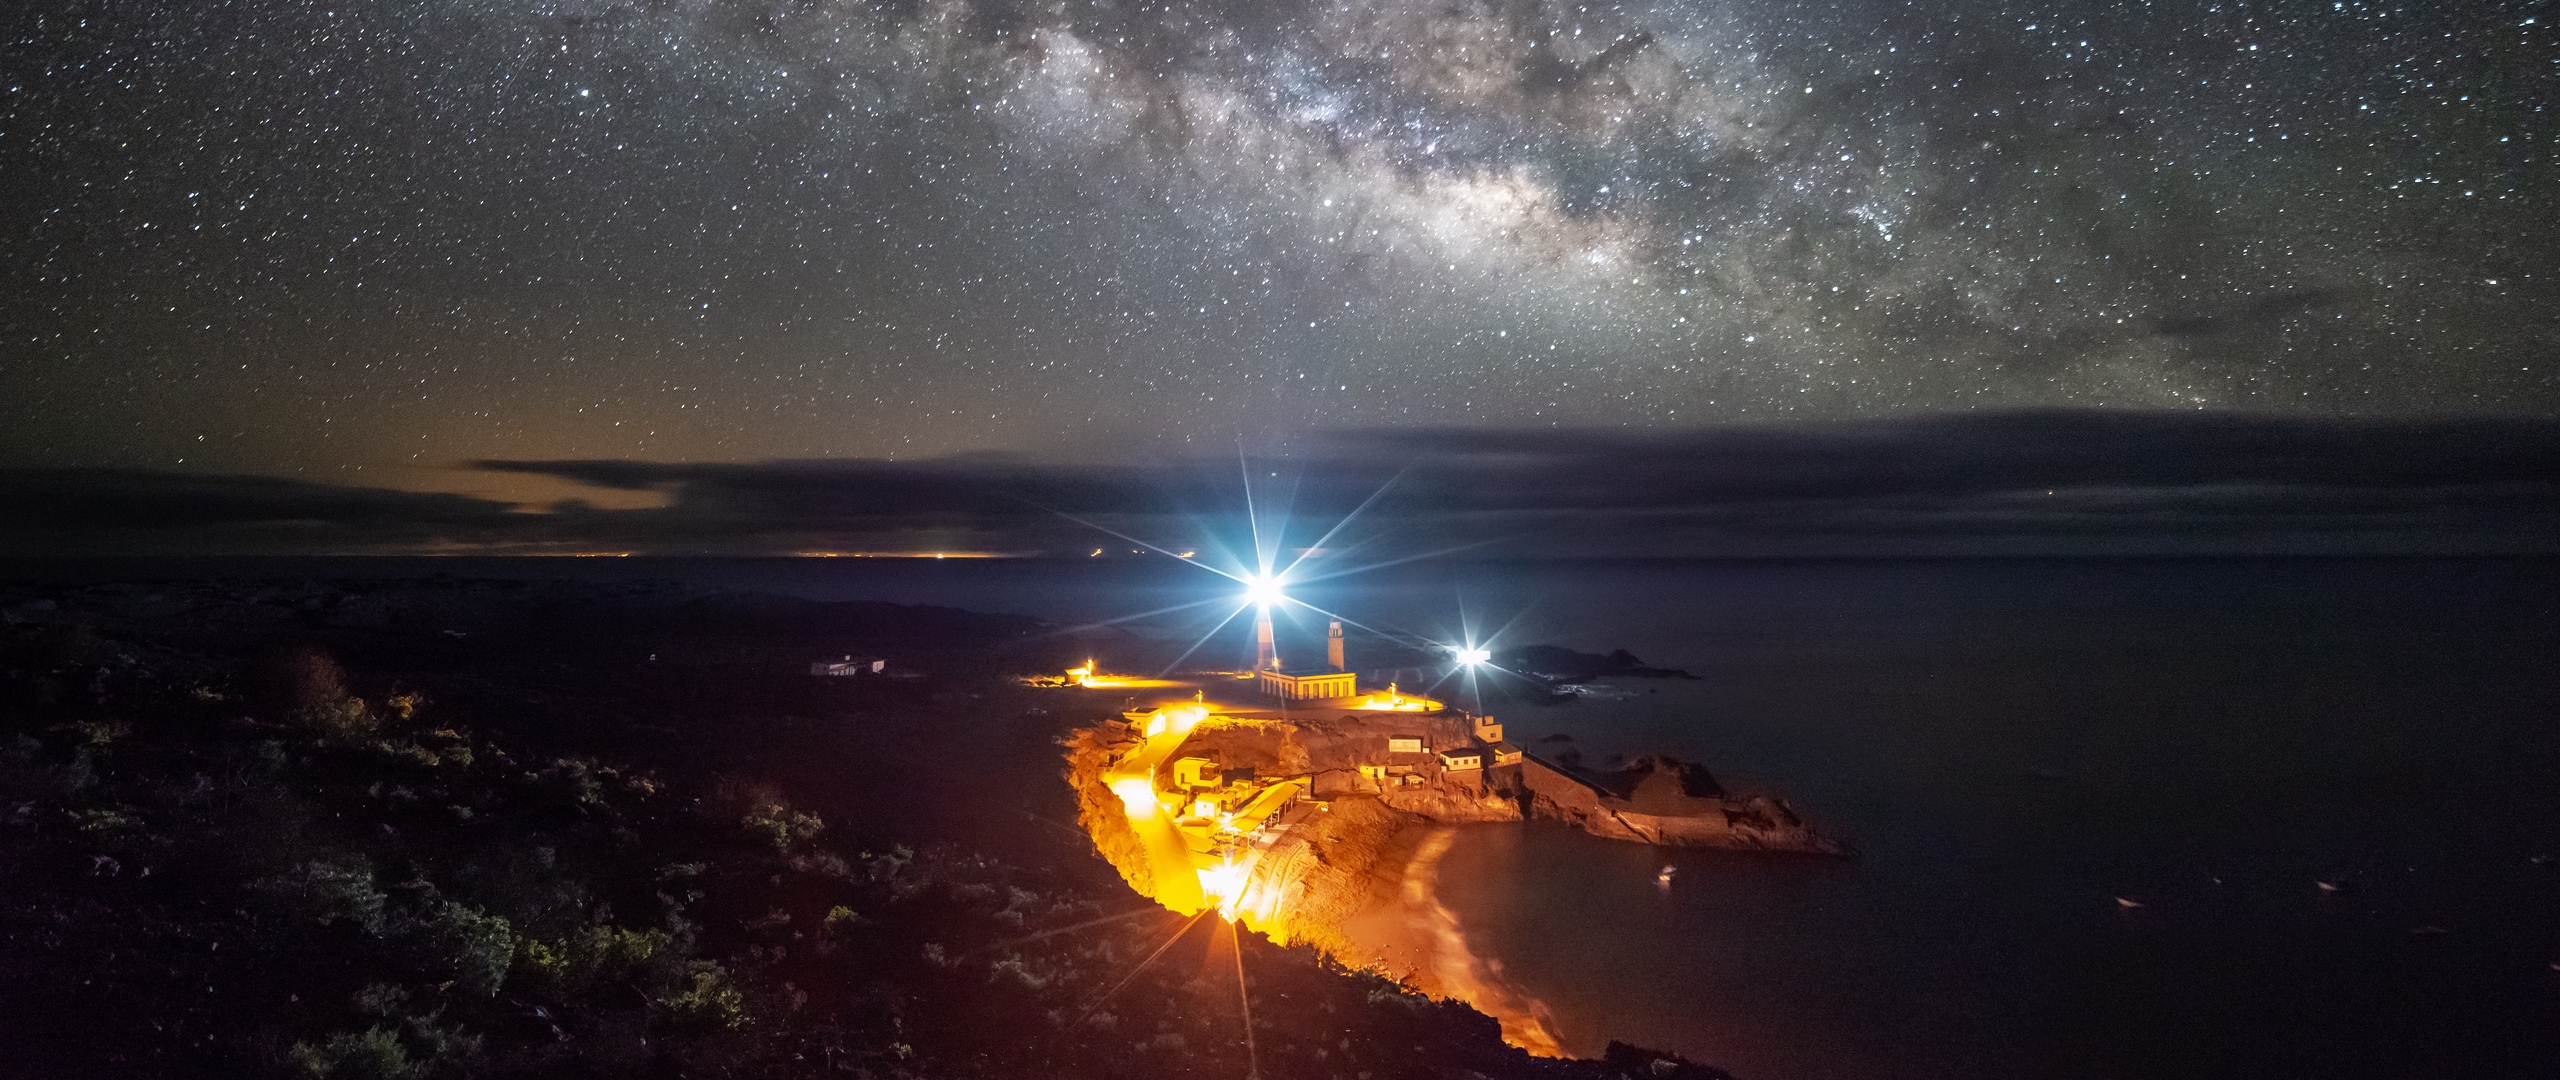 Wallpaper Starry Sky, La Palma, Spain, Night, Lighting - Milky Way , HD Wallpaper & Backgrounds